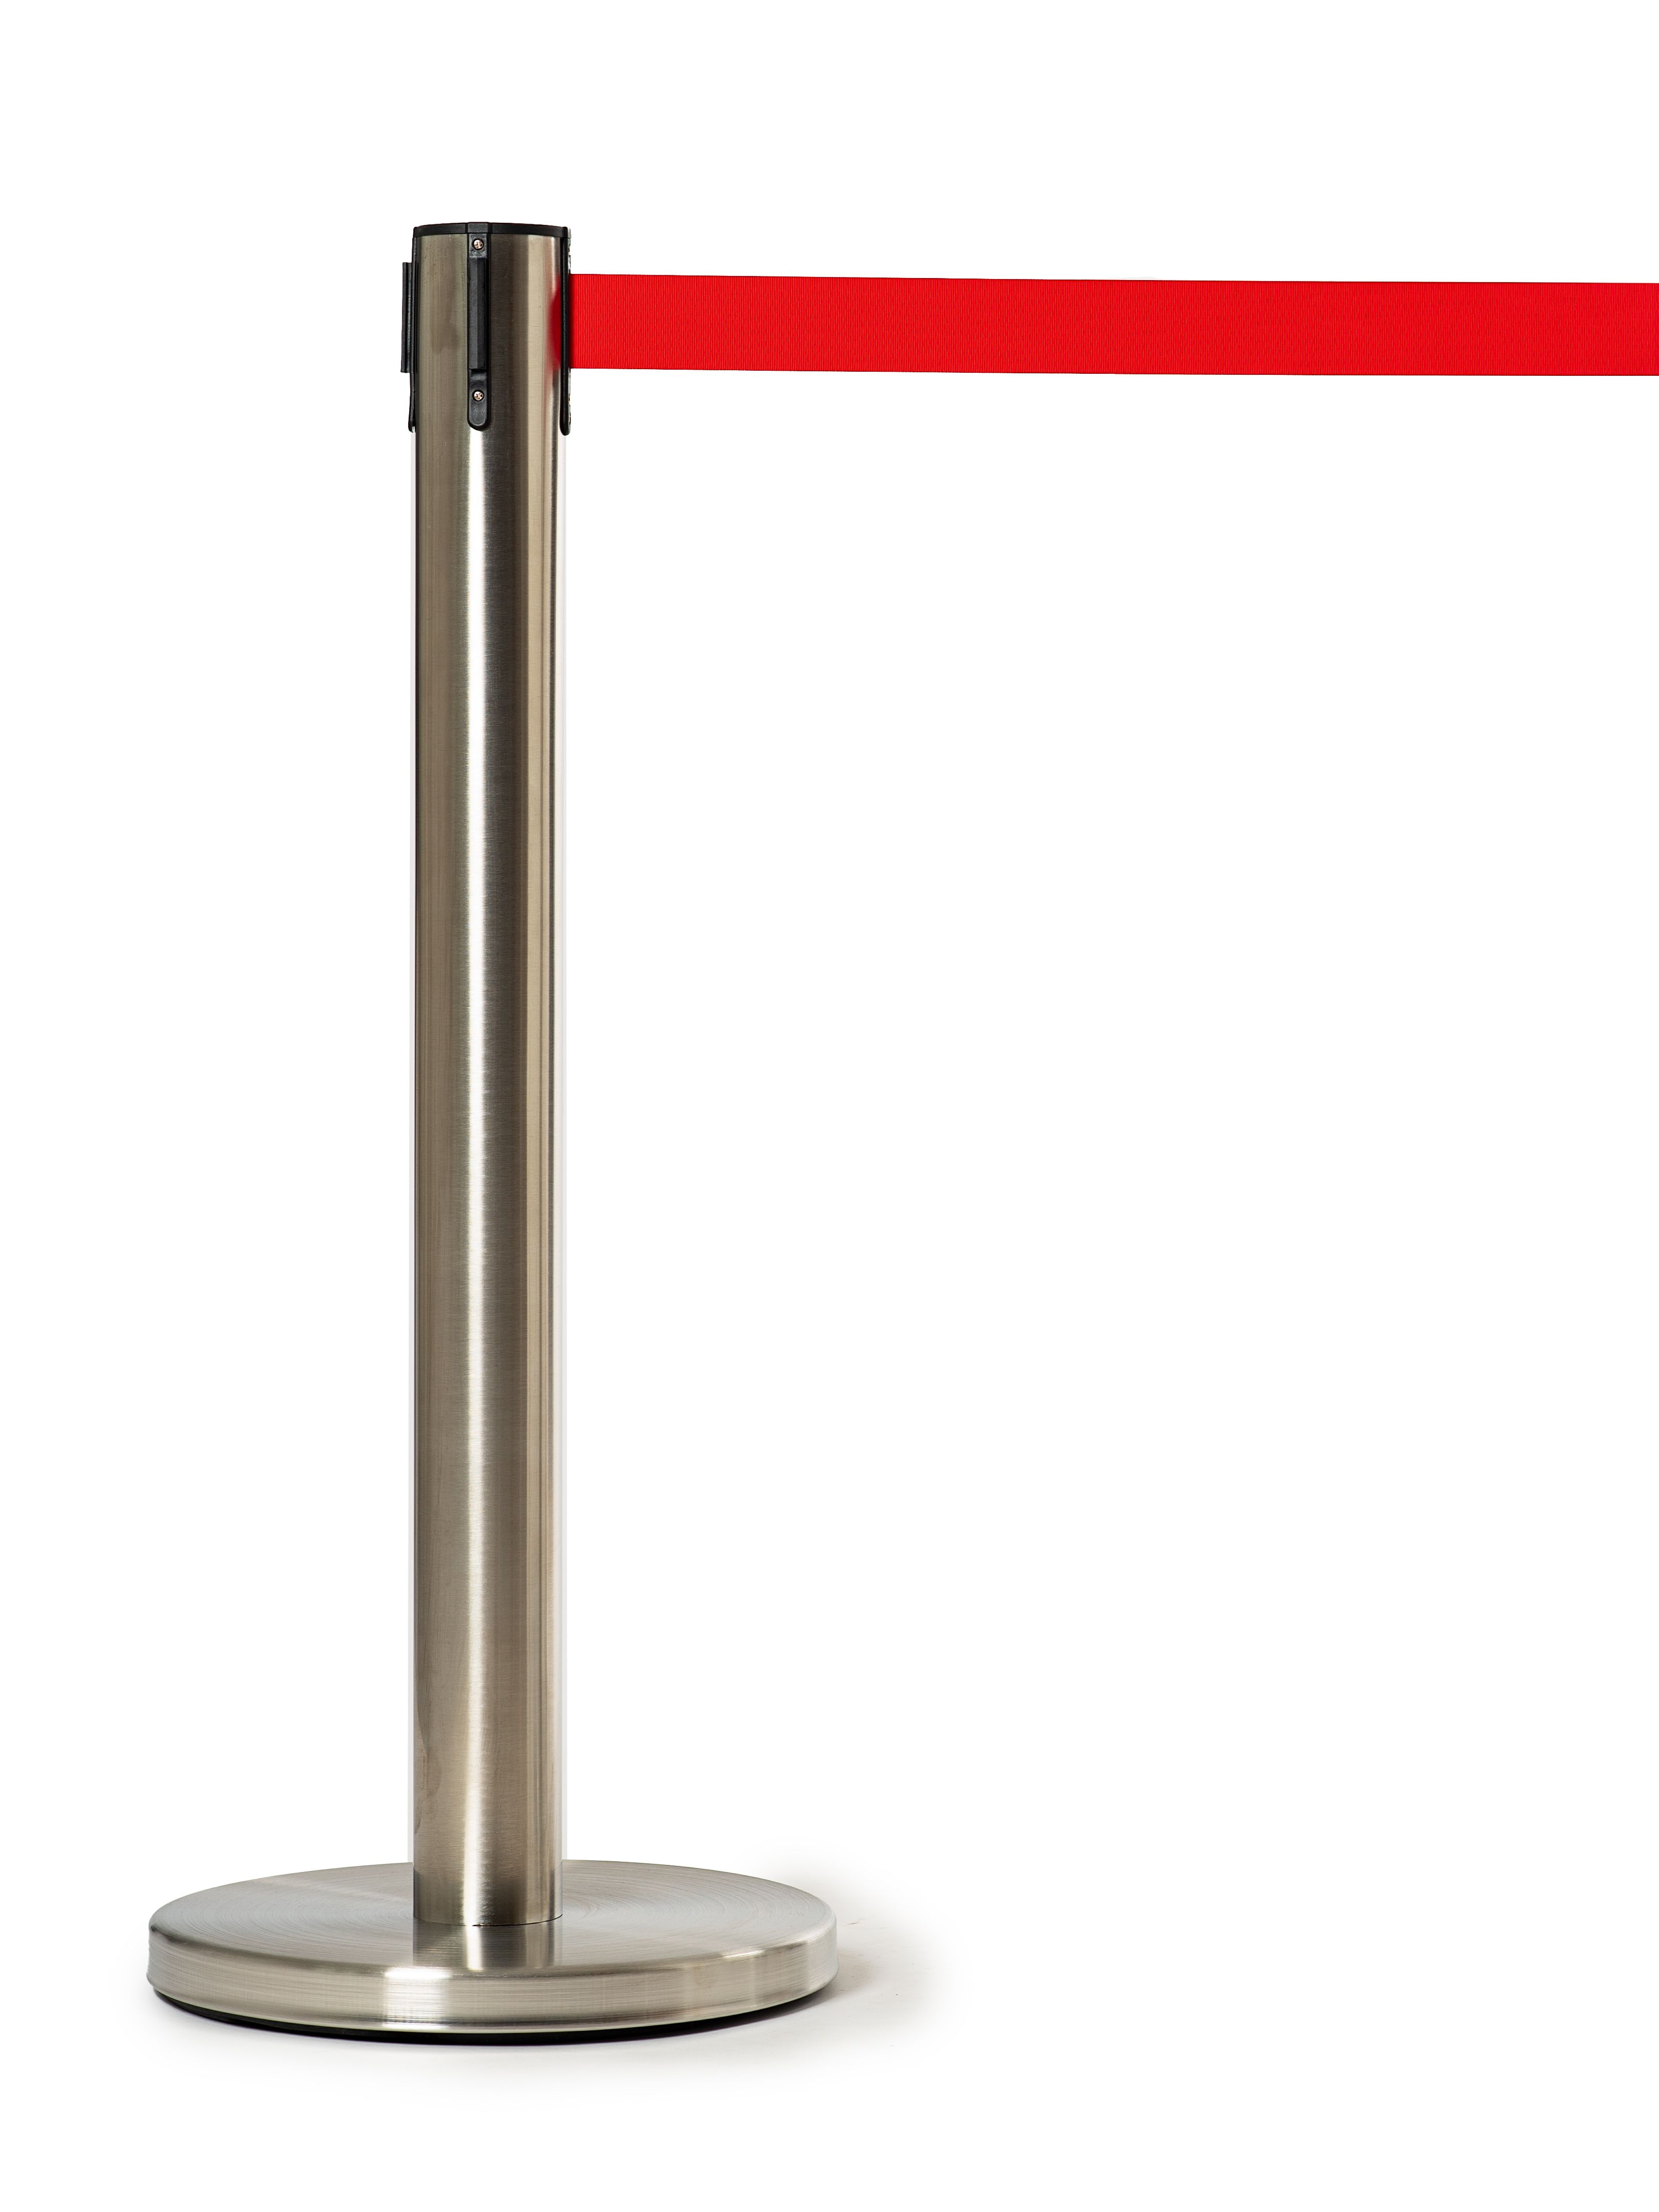 Мобильная стойка с красной лентой 5 метров (плавный ход) мобильная стойка ограждения с вытяжной черной лентой 5 метров 15 1 16